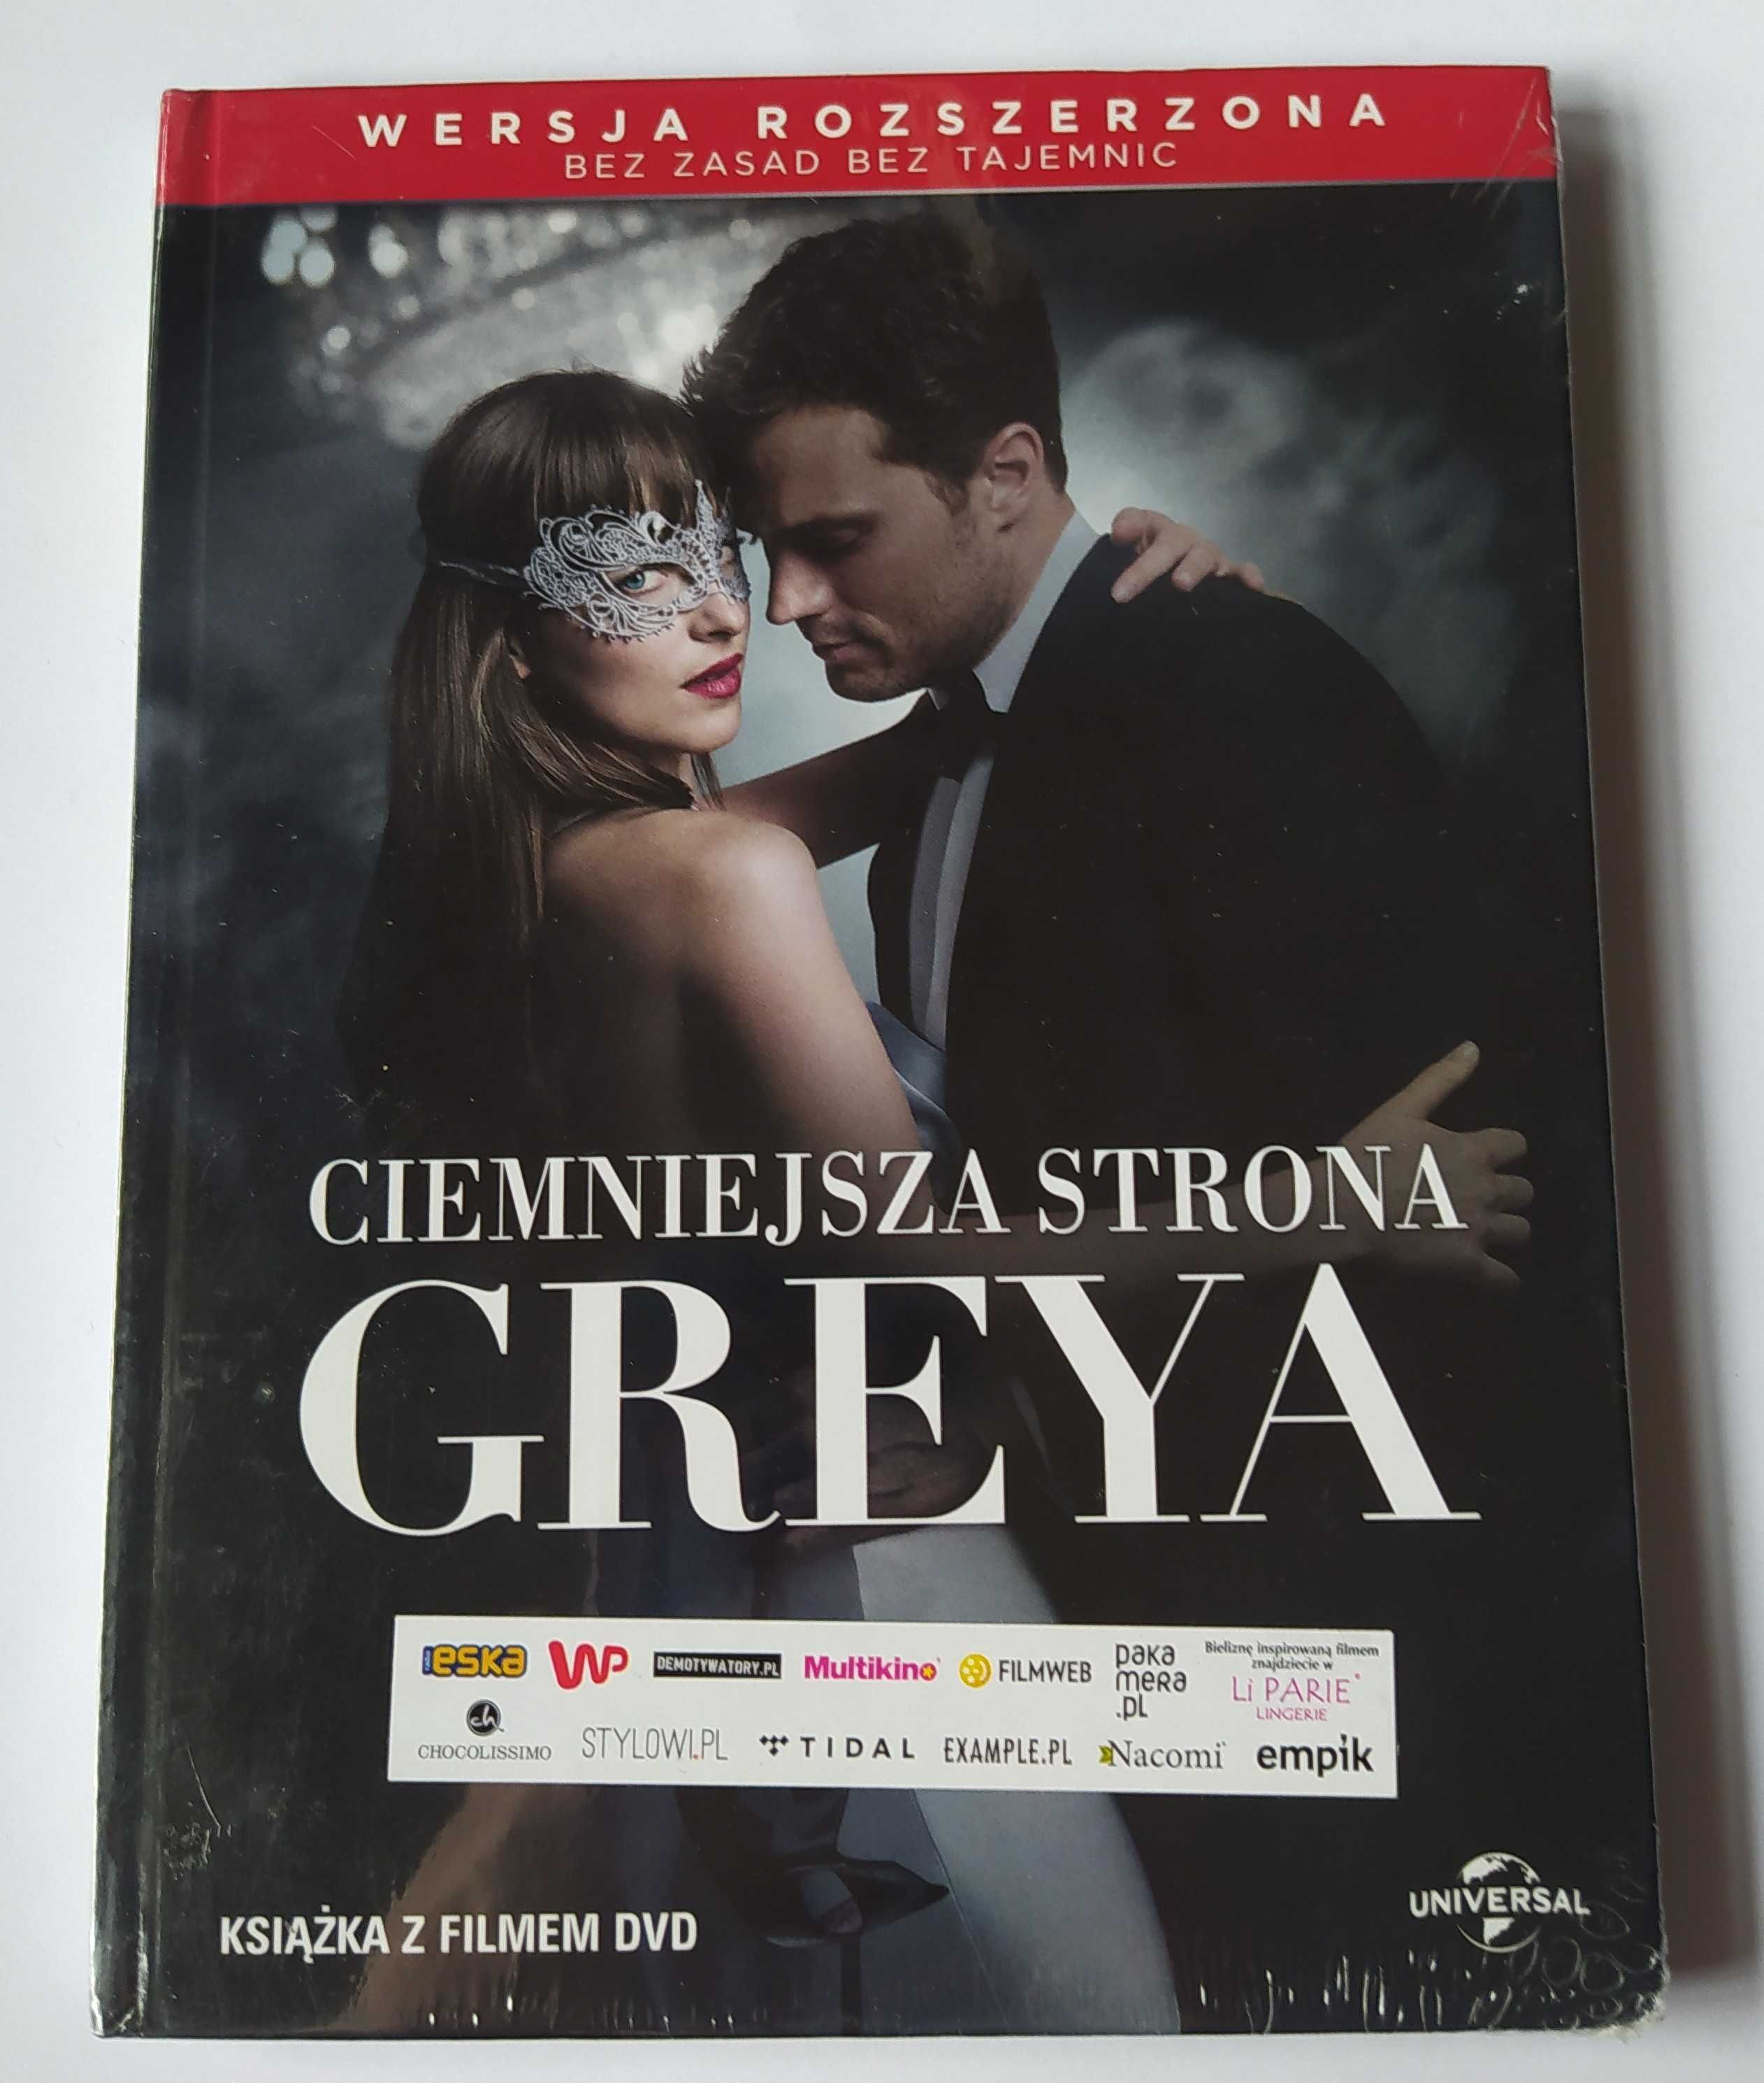 Ciemniejsza Strona Greya + Nowe Oblicze Greya 2 x DVD Booklet